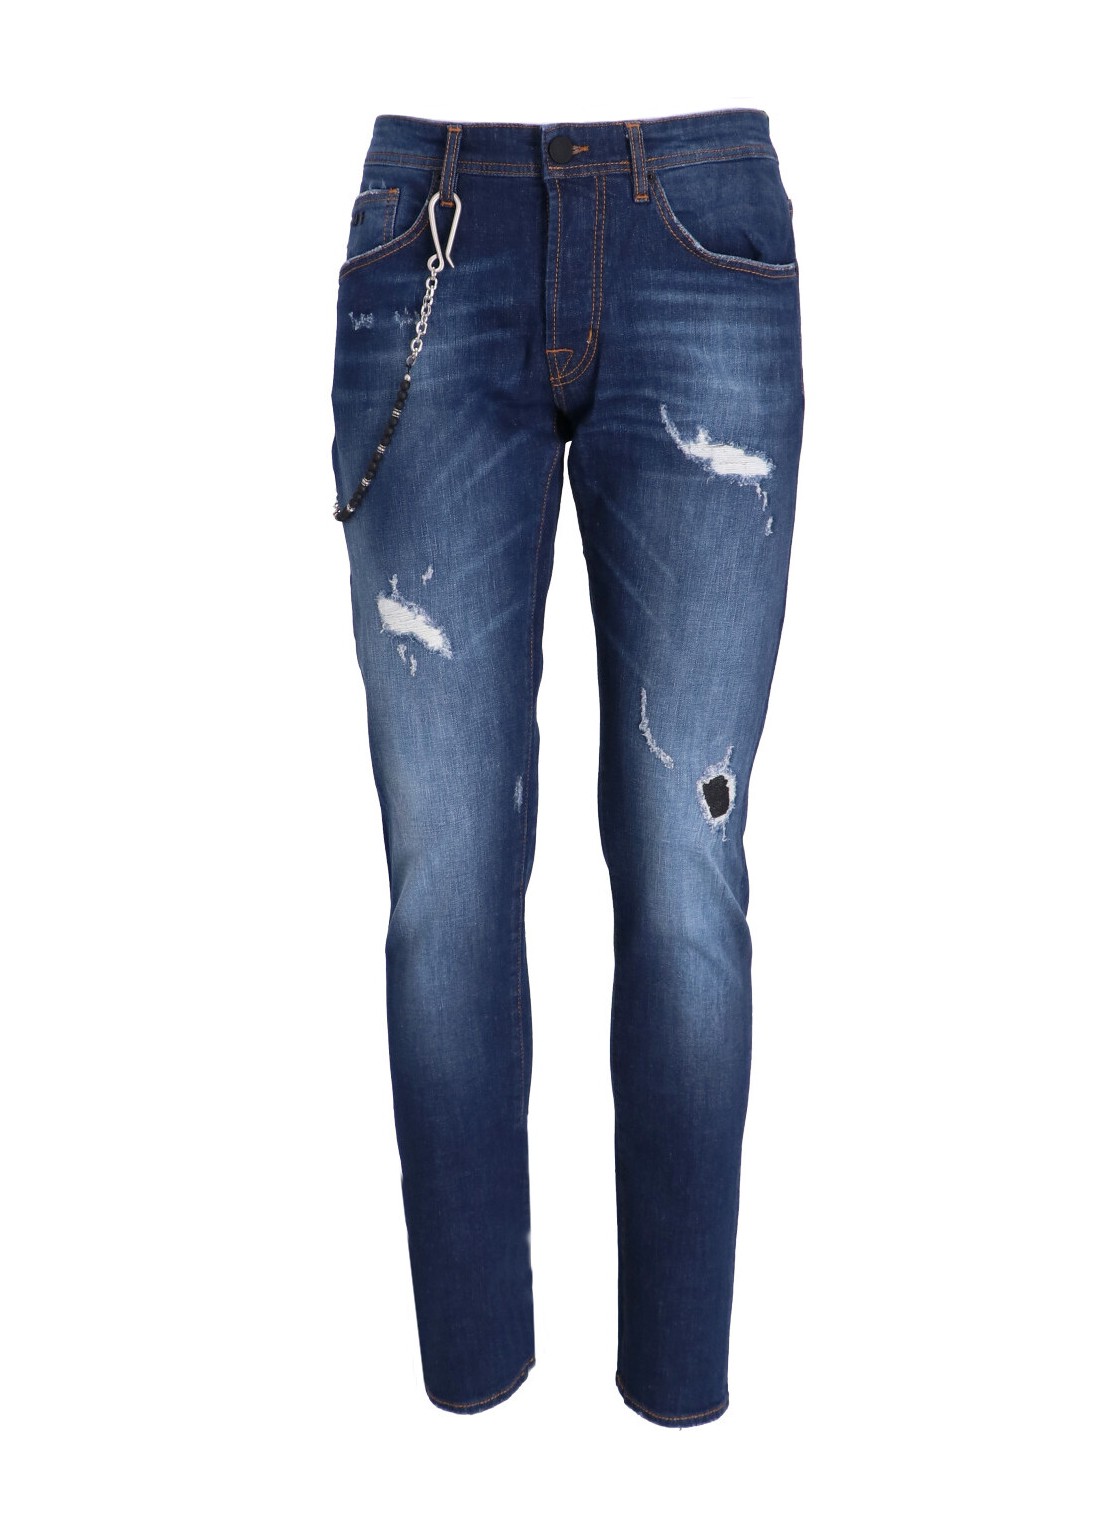 Pantalon jeans tramarossa denim man 1980 1980 23150 talla 35
 